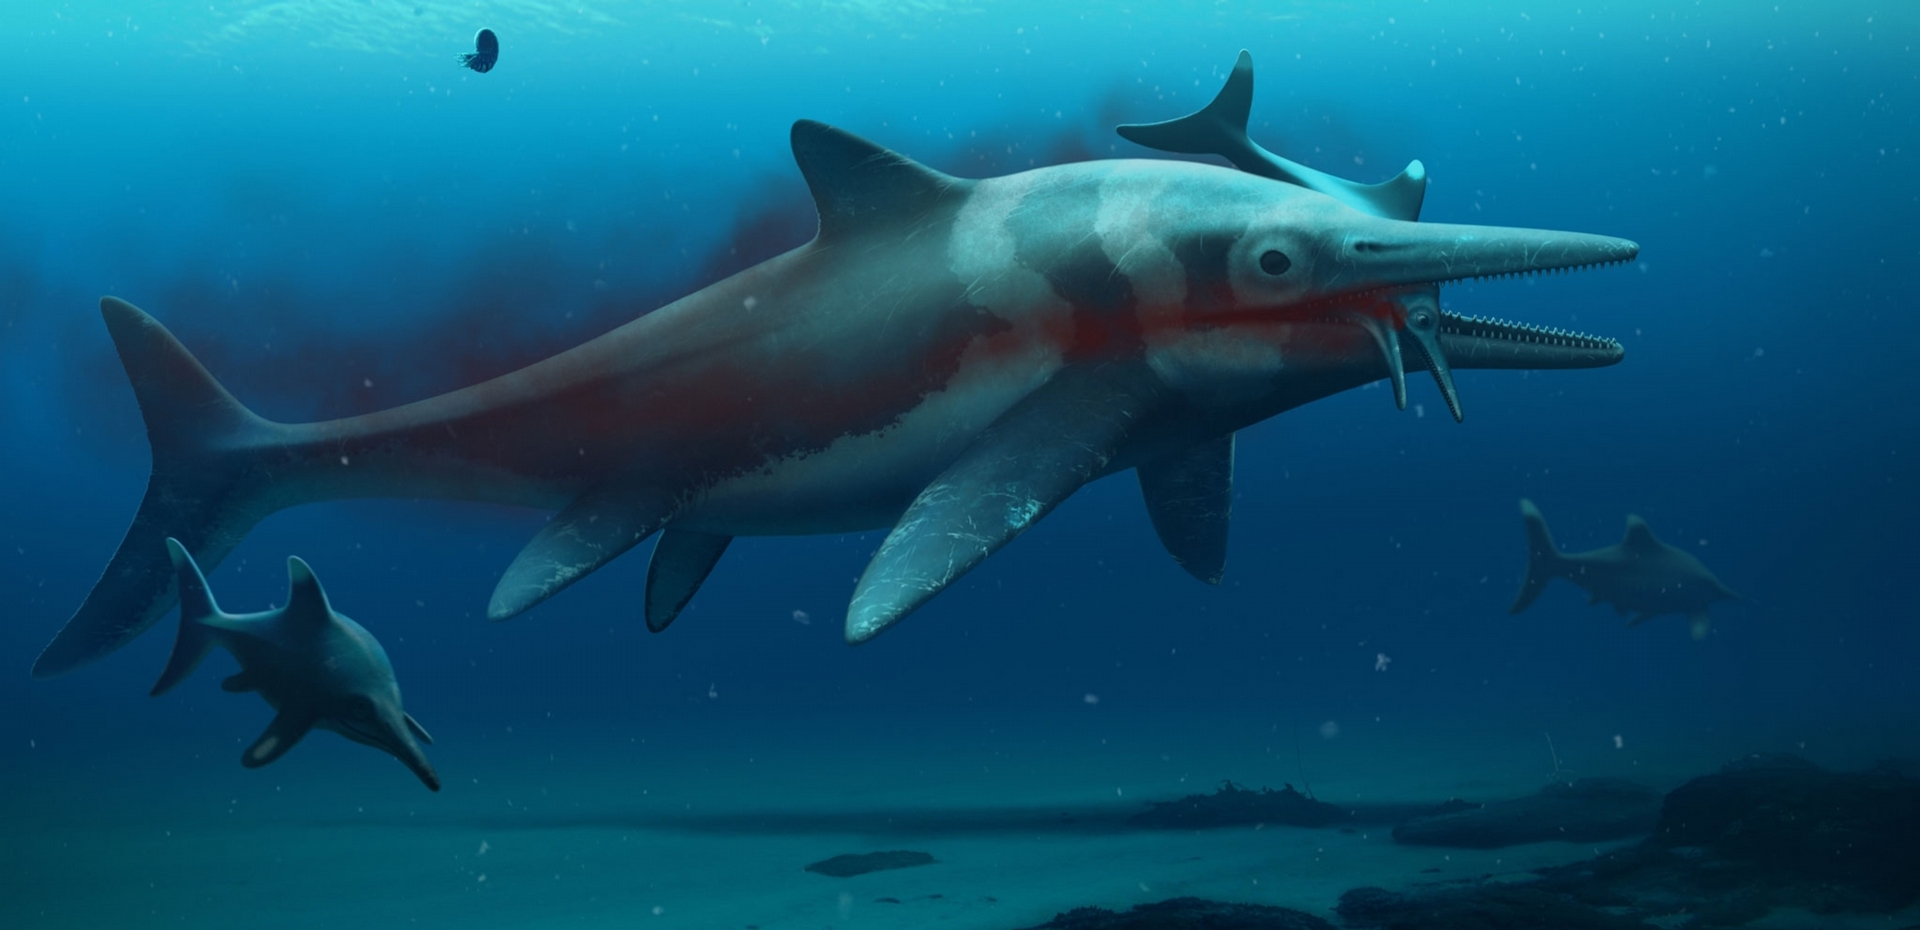 鱼龙是一种海洋爬行类，也是远古海洋中体型最大的掠食者之一。新发现的化石将有助科学家了解它们的演化史。 ILLUSTRATION BY BOB NICHOLLS